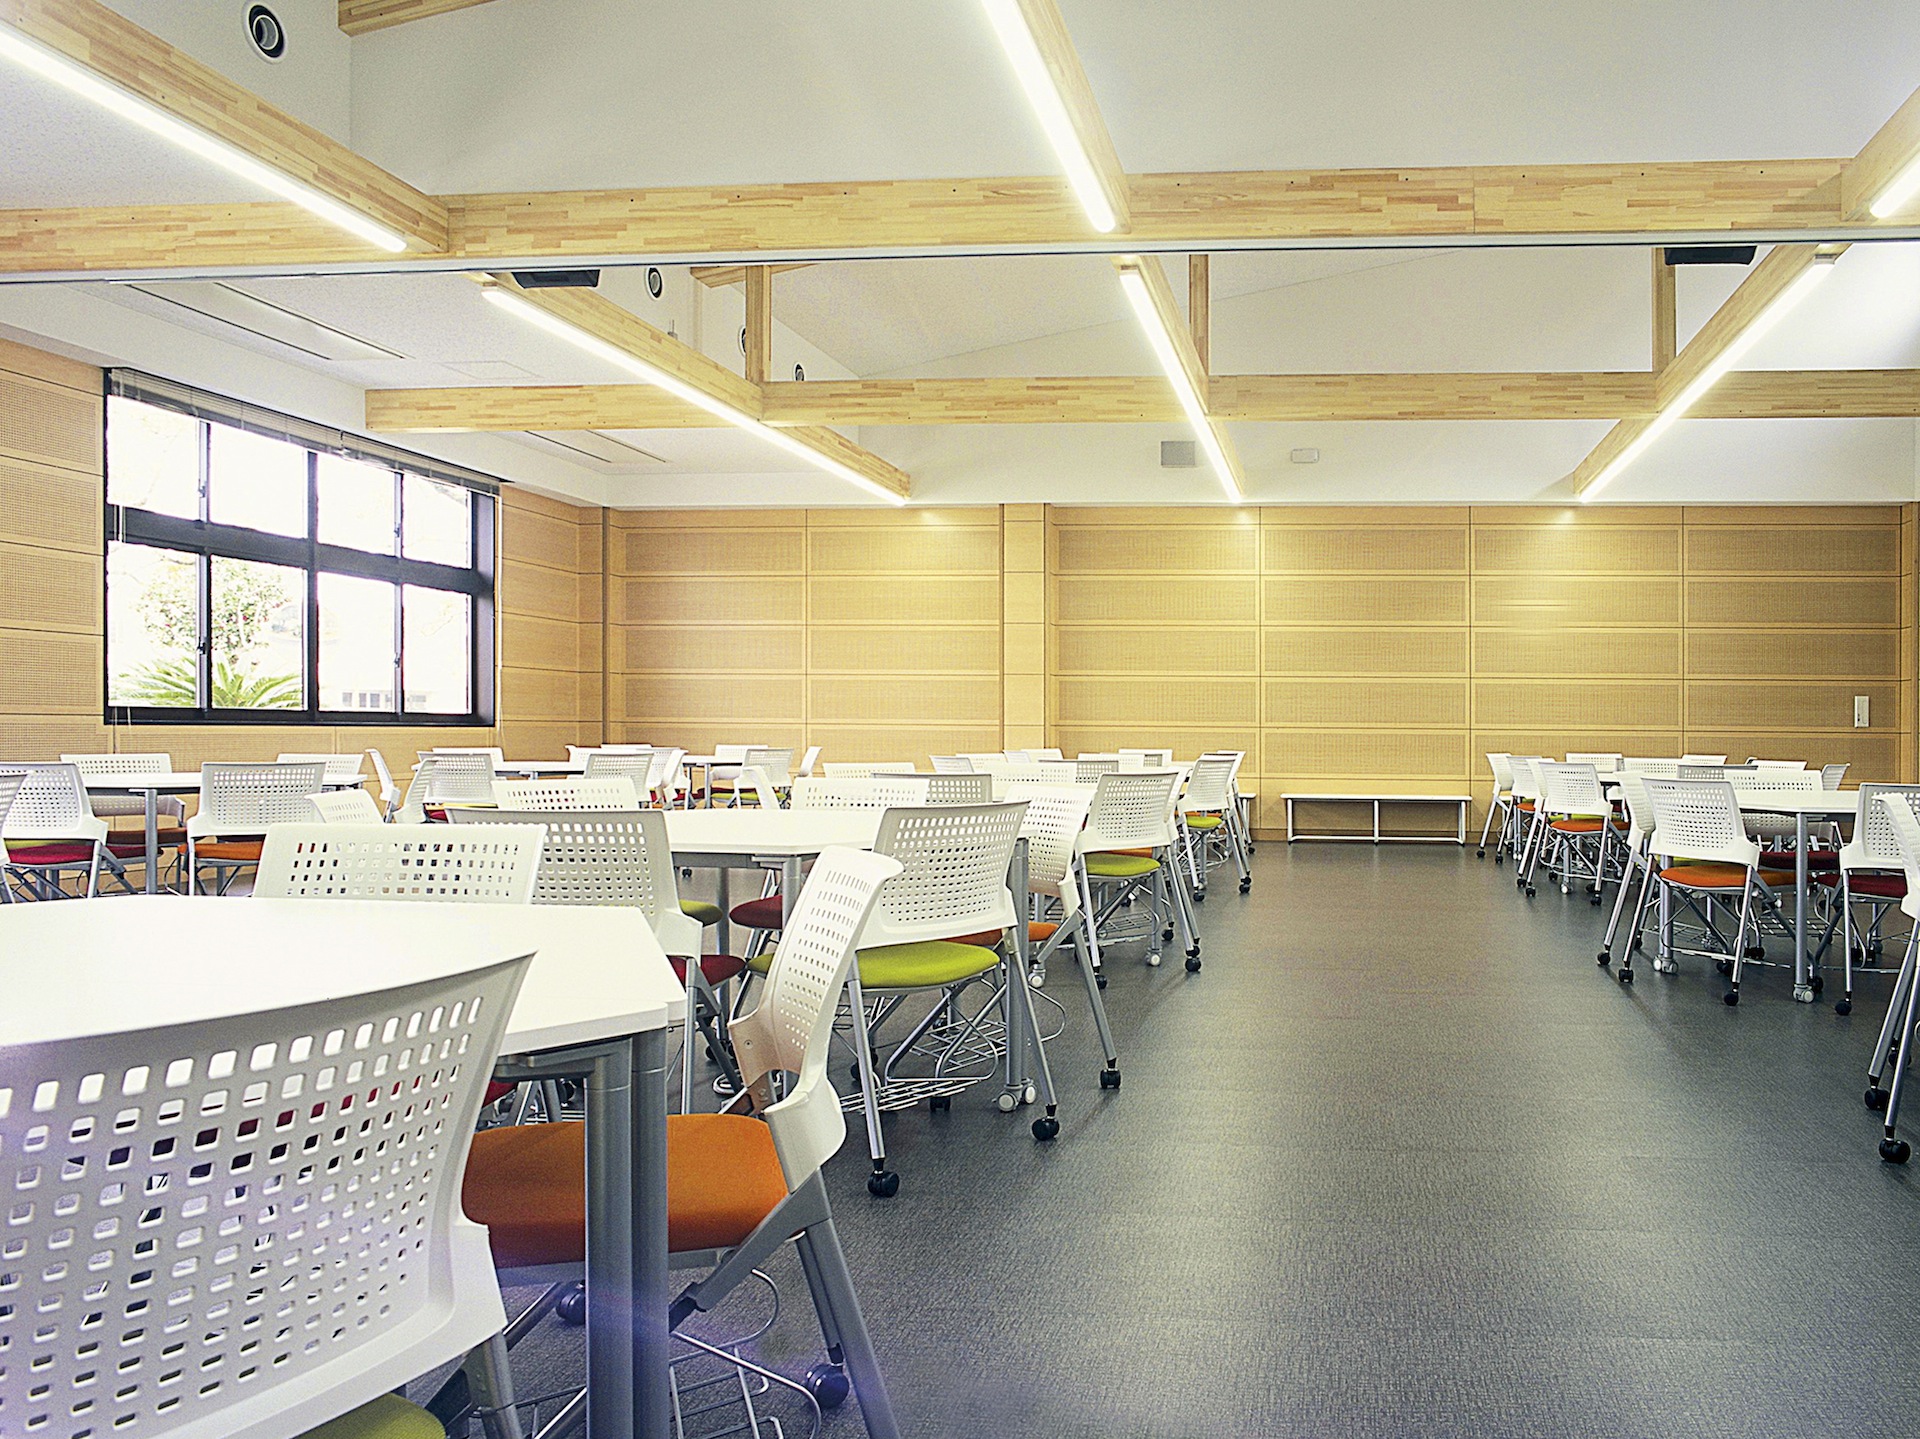 【宮崎キャンパス(ひなた館)】アクティブラーニングルーム。可動式のテーブル、椅子、ホワイトボードを備え、学習スタイルに合わせてレイアウトを変更できる学習空間。